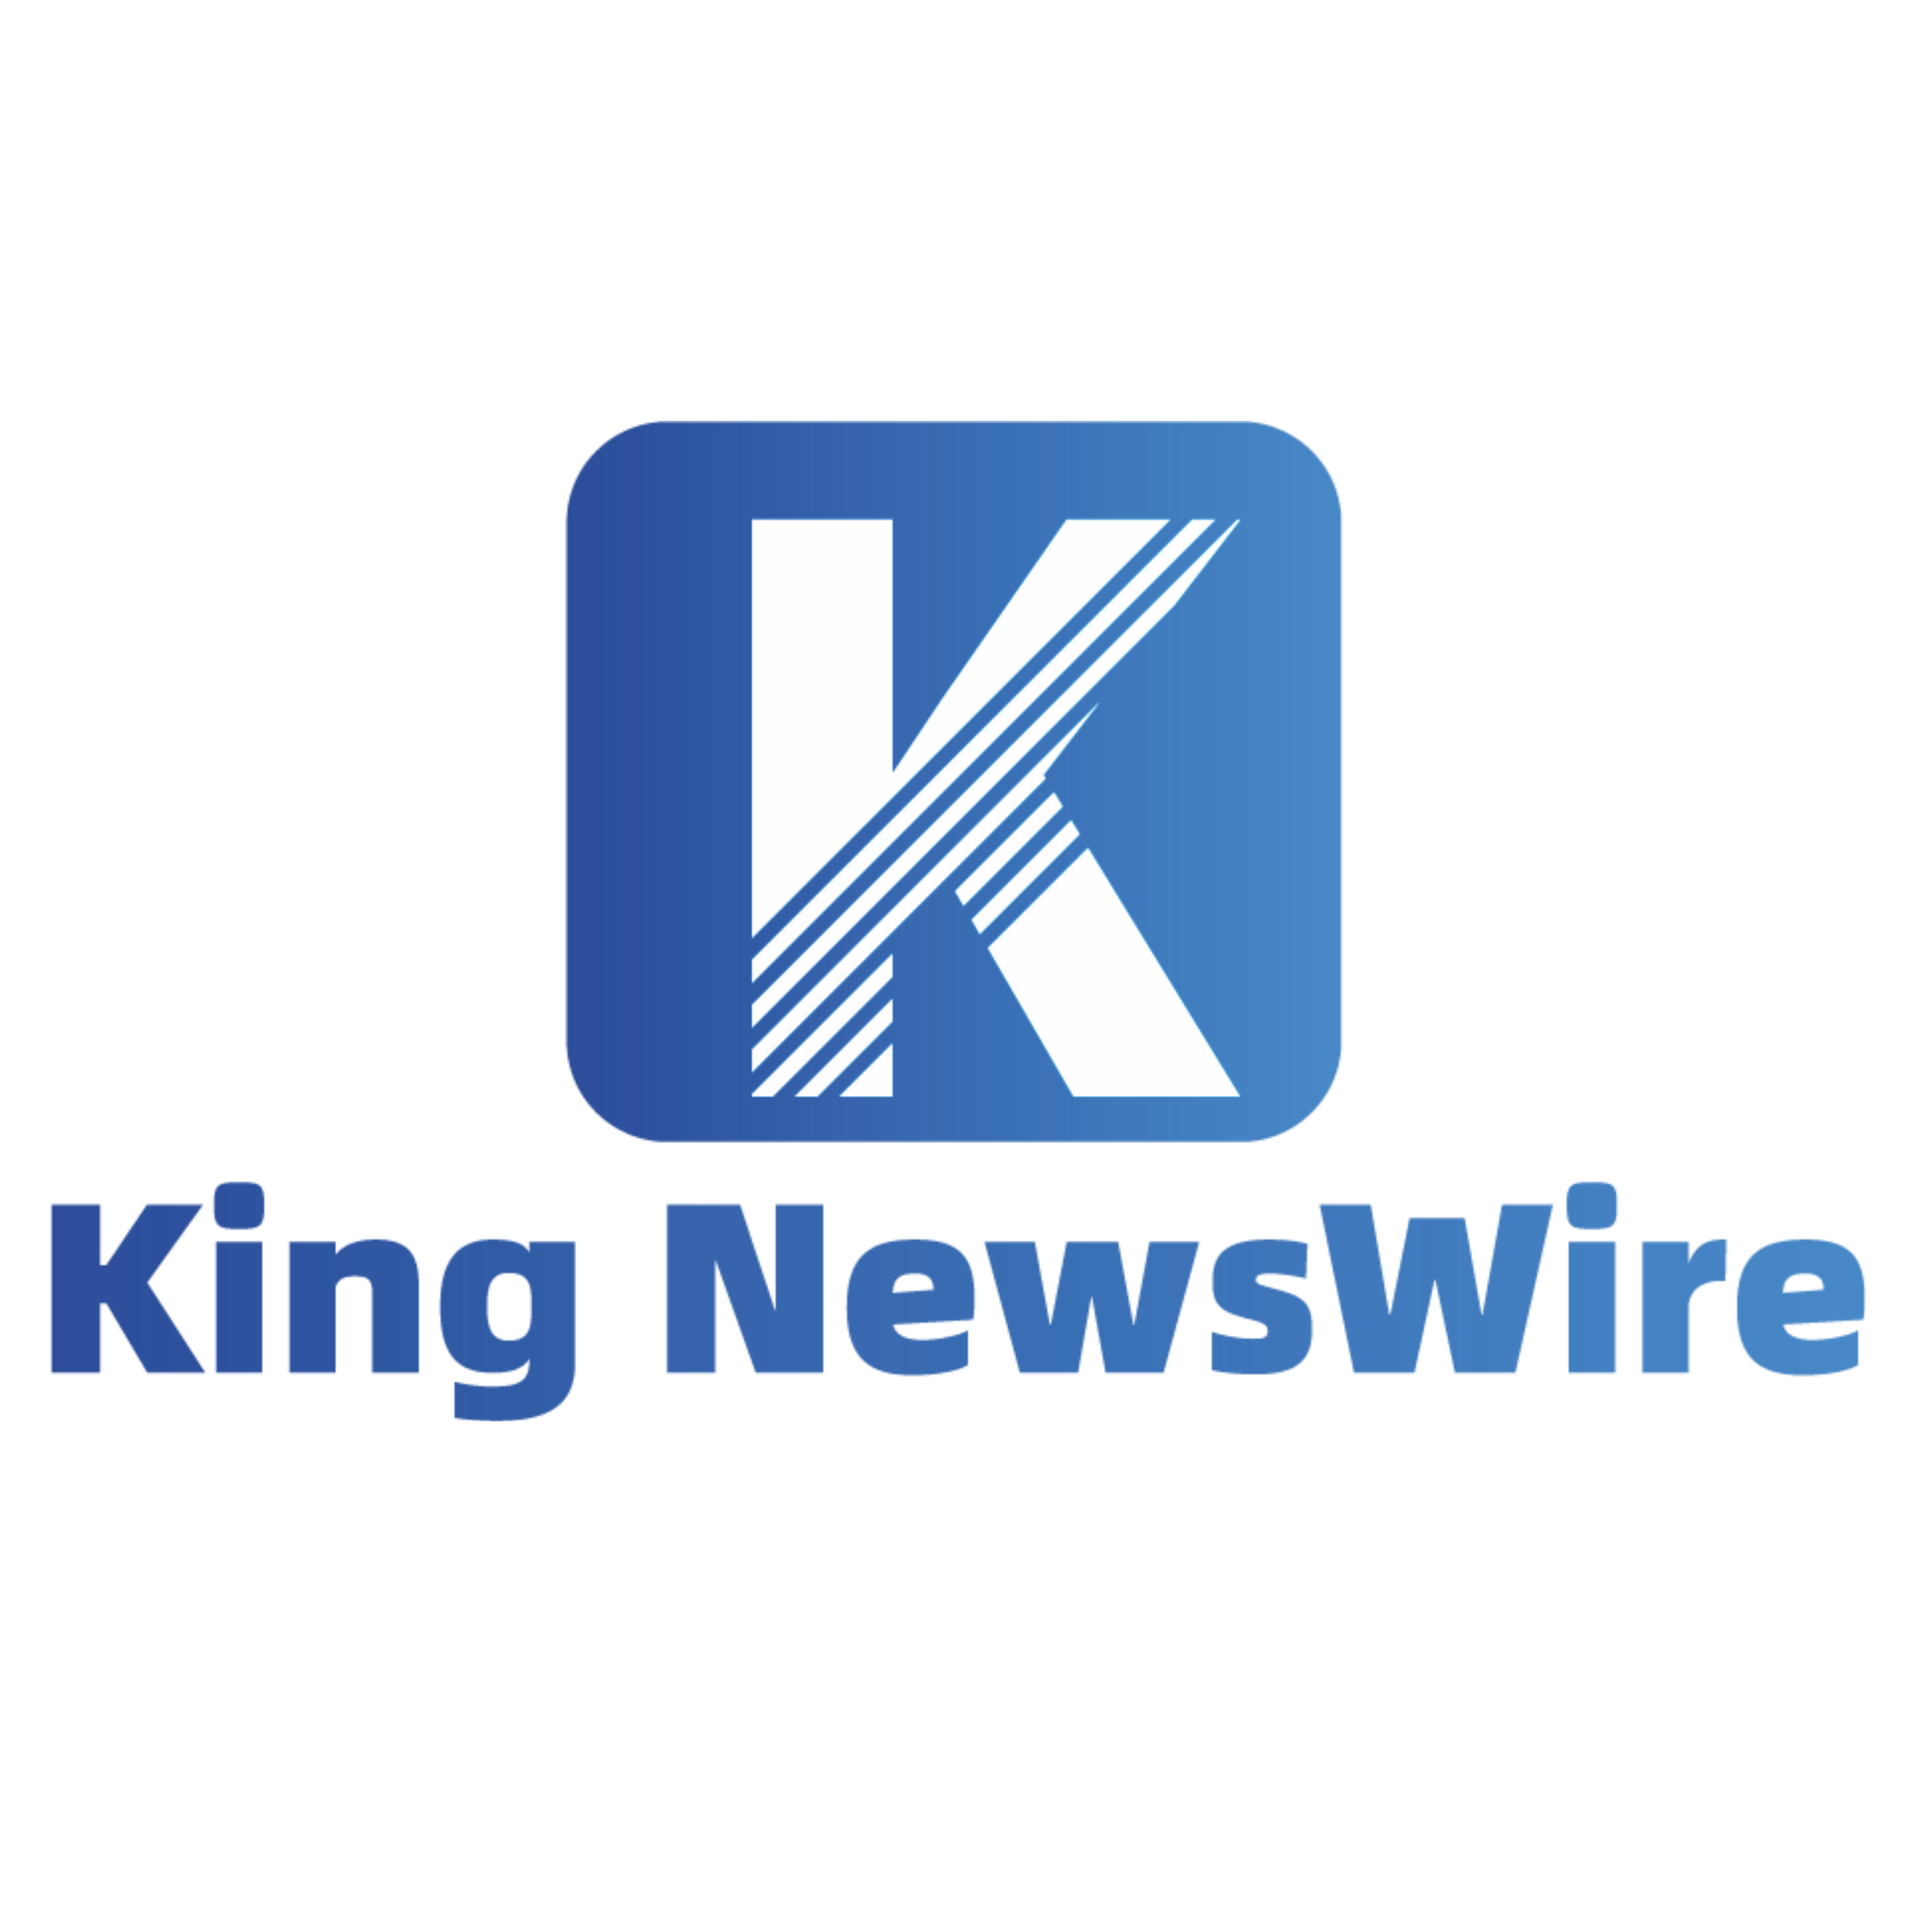 King Newswire